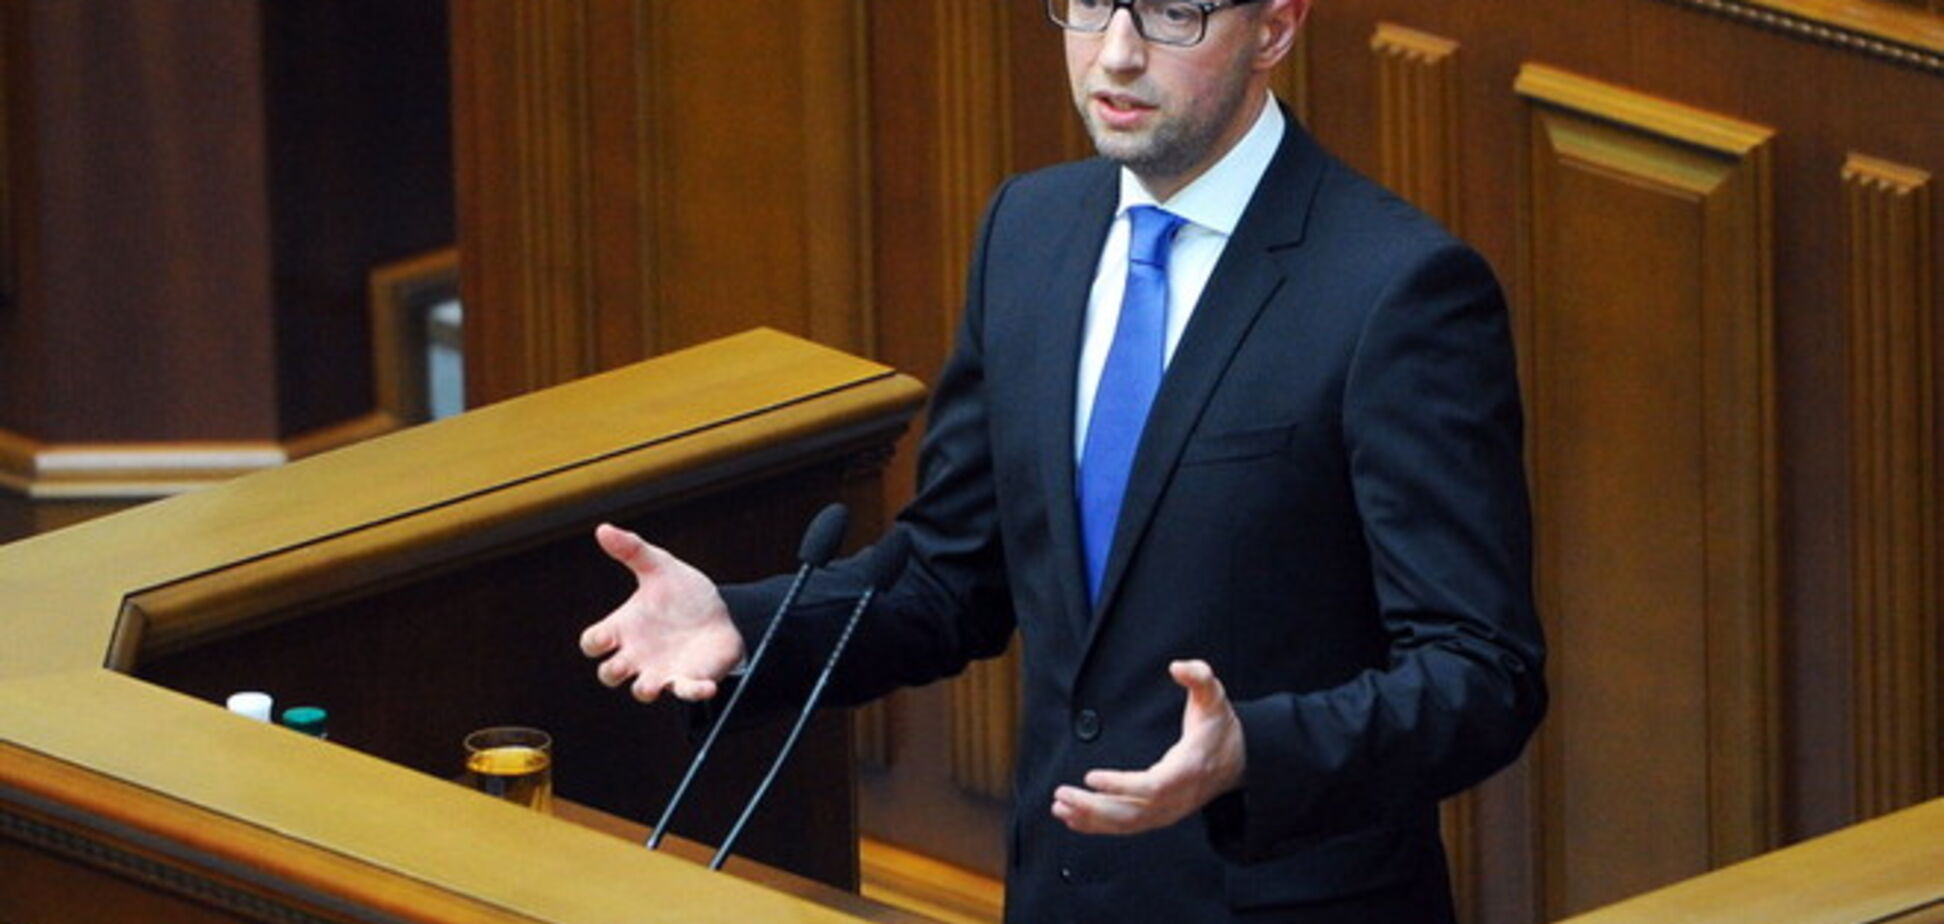 Яценюк: Украина идет трудным путем, но в правильном направлении